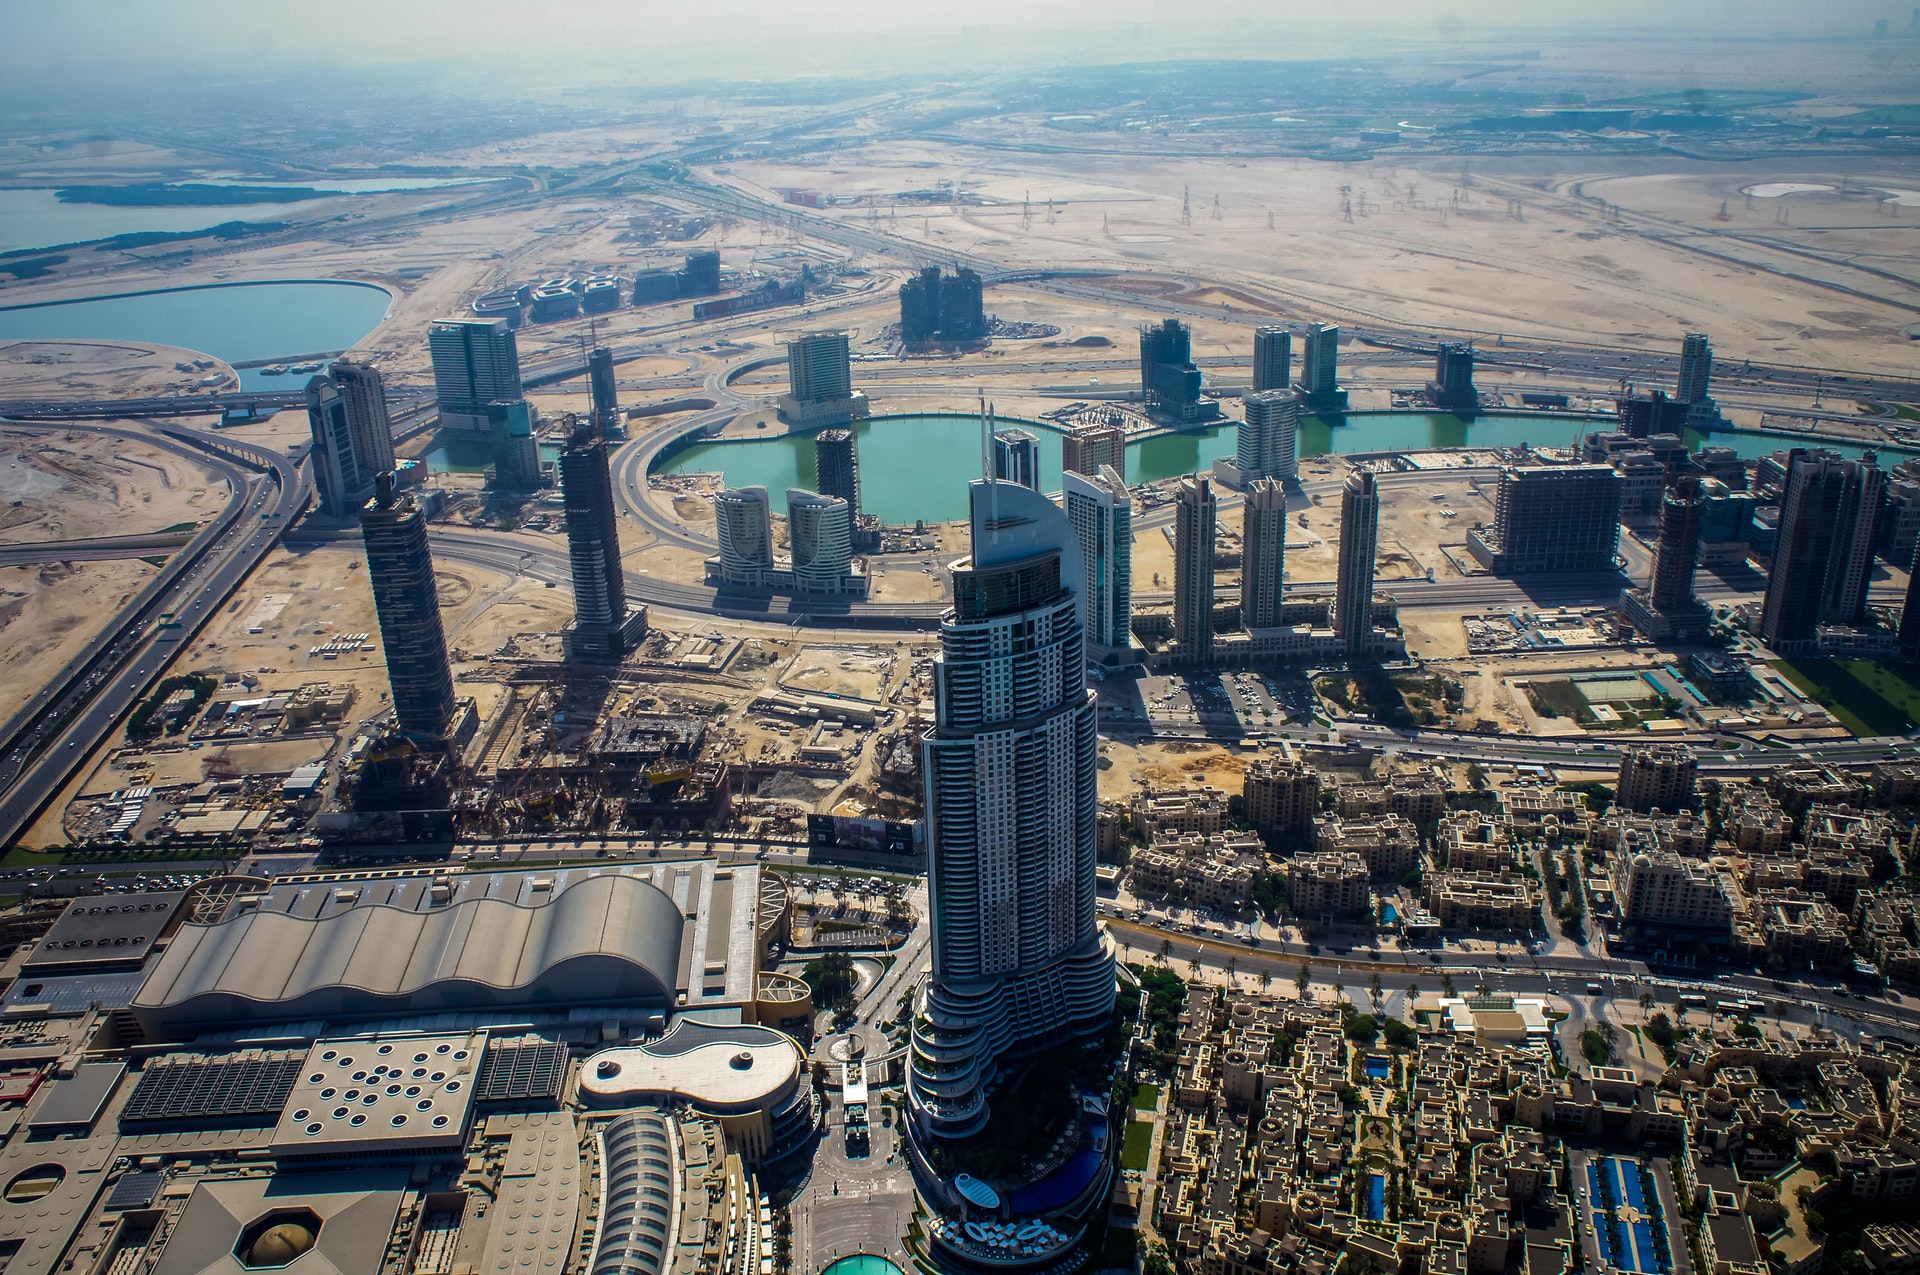 Dubaï est connu pour ses bâtisses démesurées